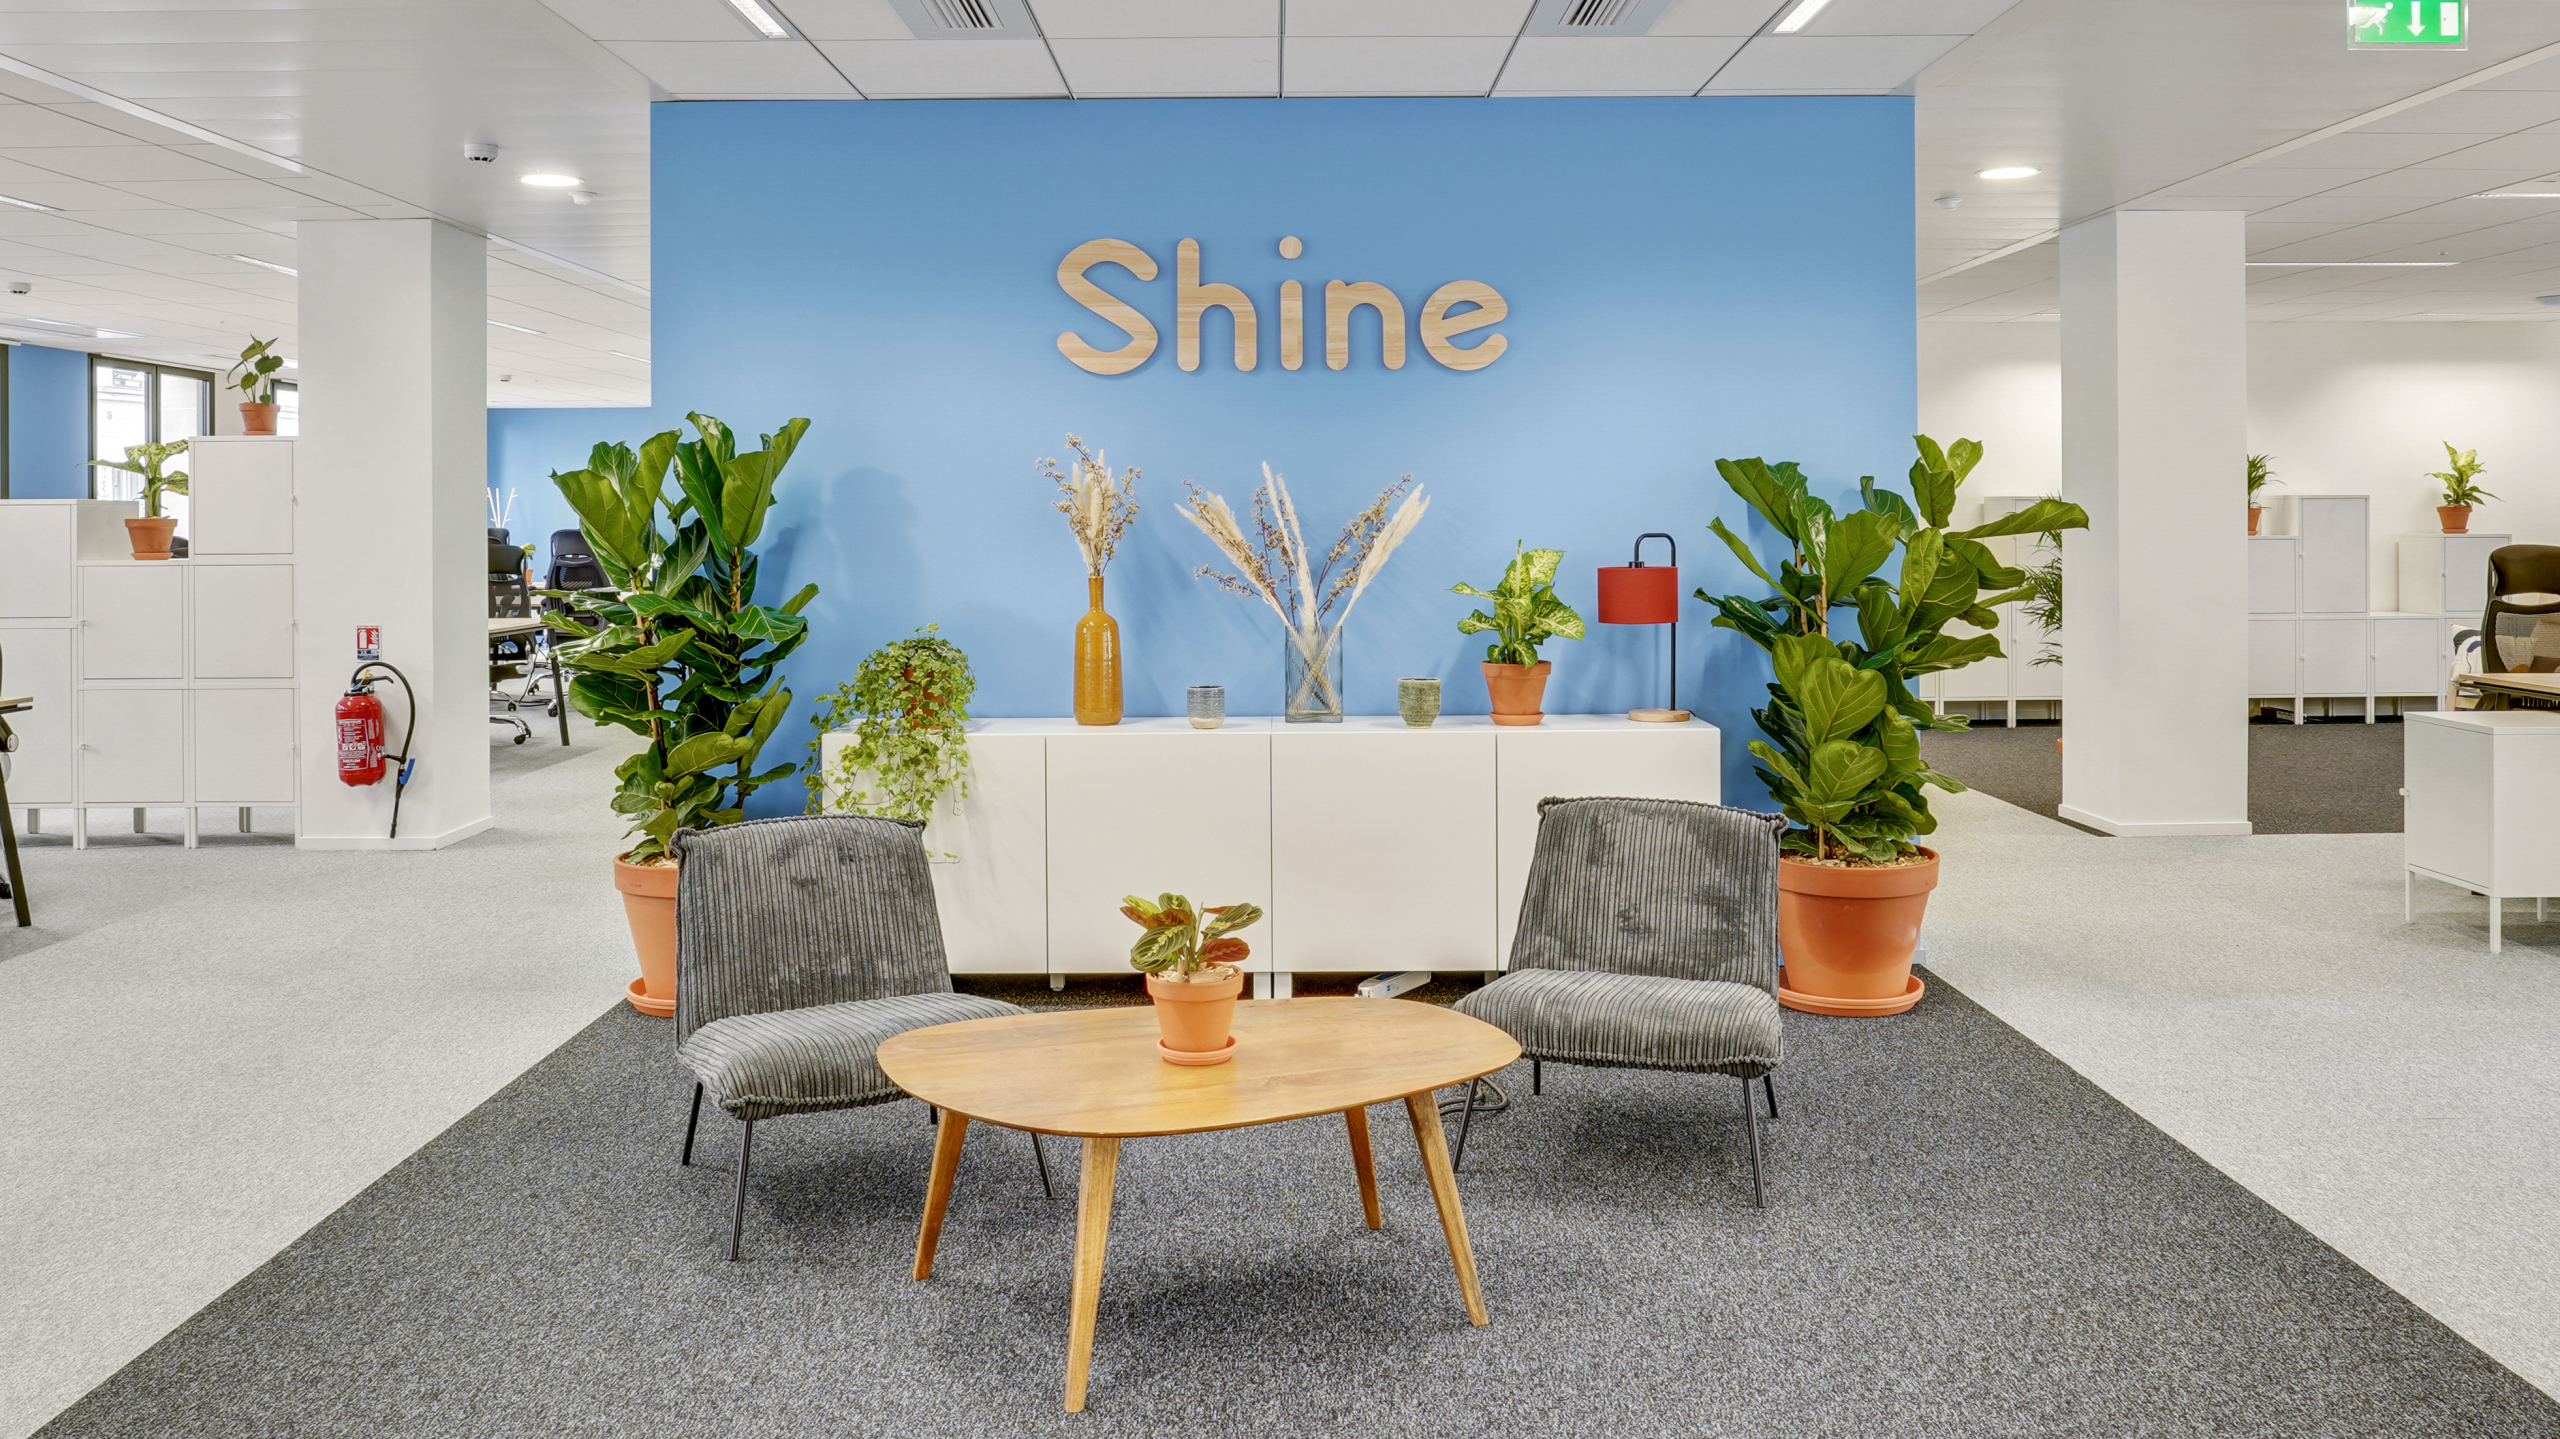 Logo Shine avec petit espace détente arboré de plantes